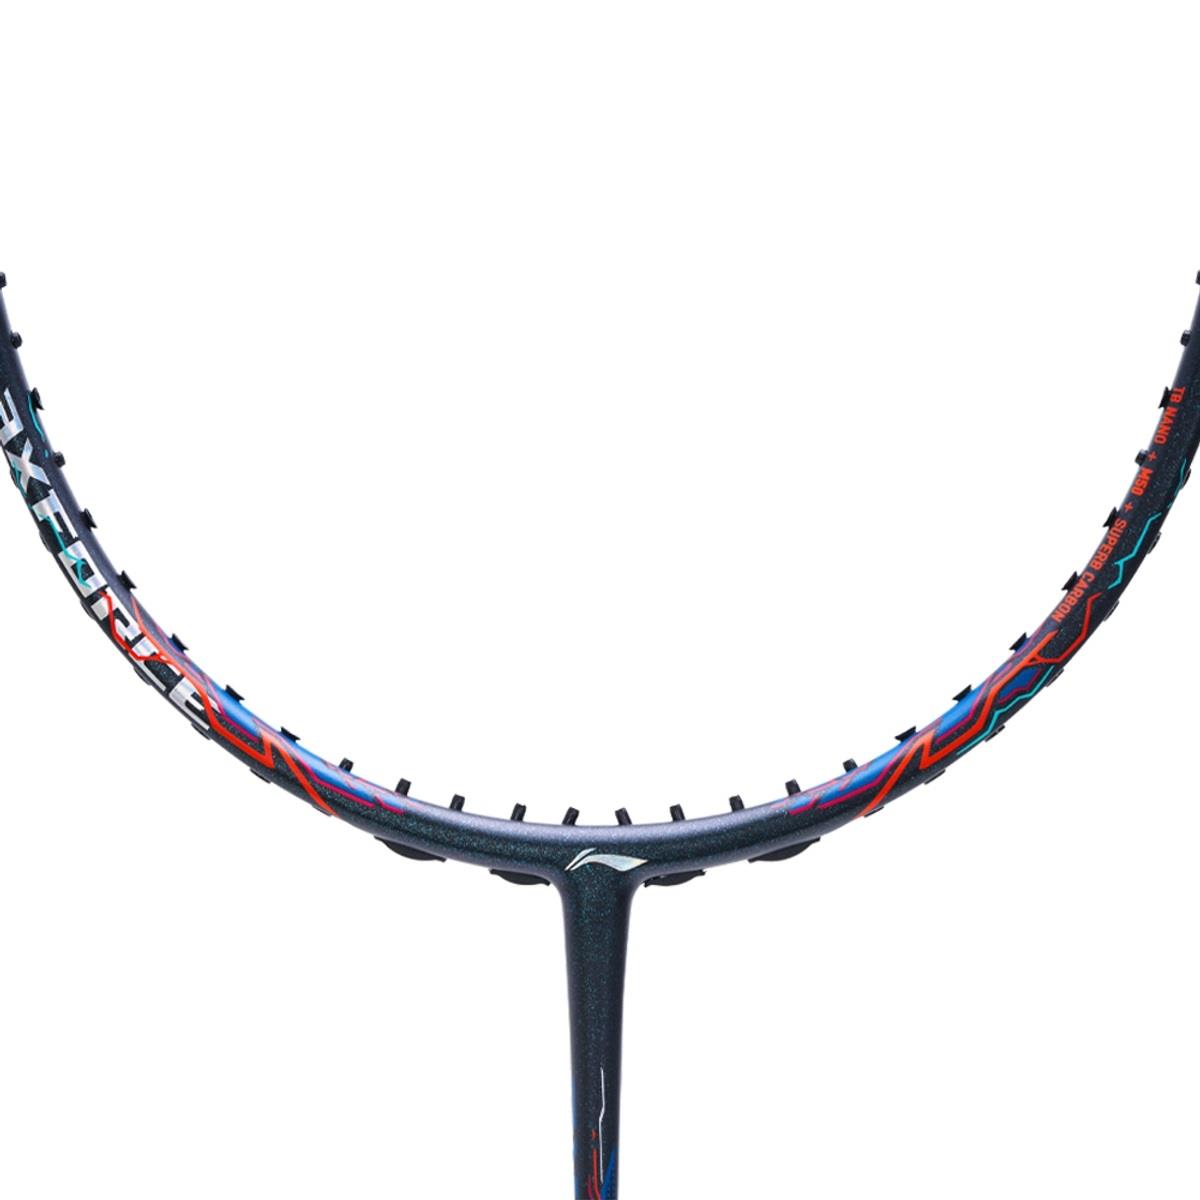 Li-Ning Axforce 90 Tiger Max 4U Badminton Racket - Black